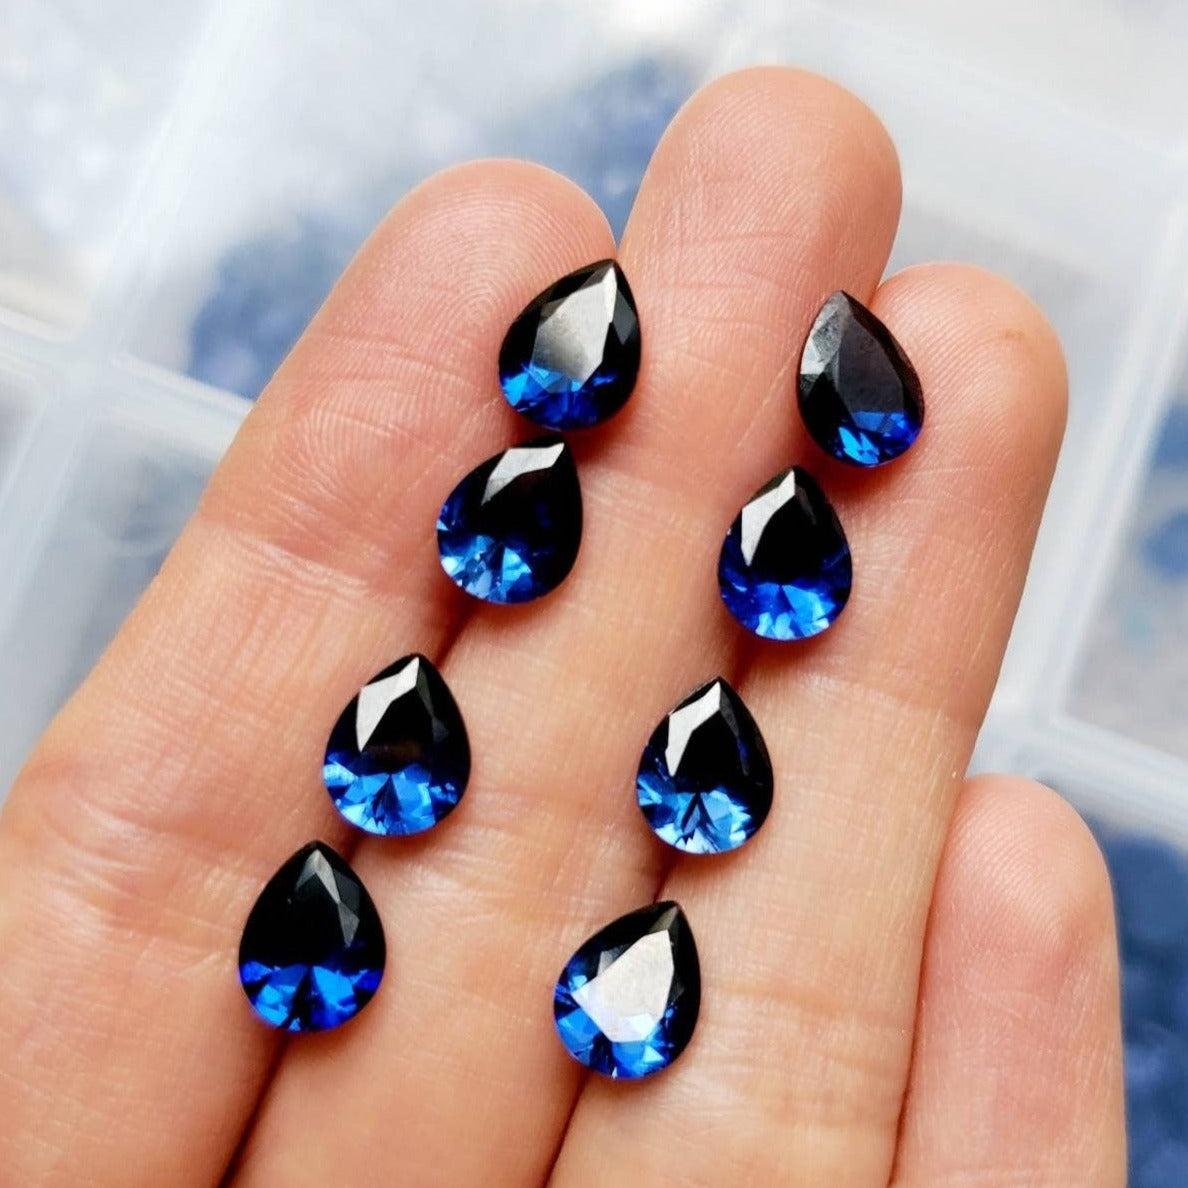 deep blue sapphire